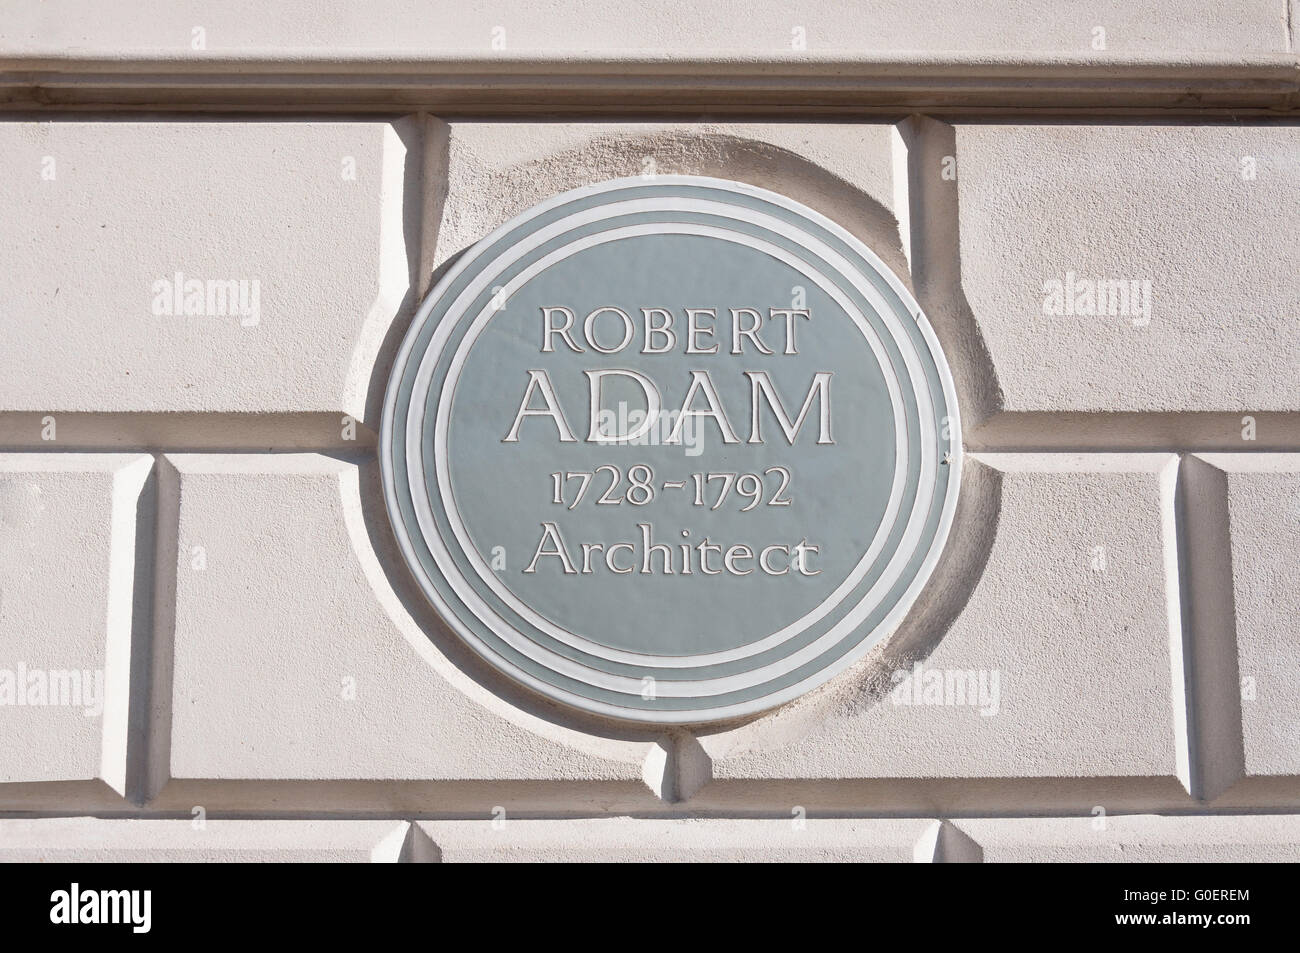 Robert Adam (architecte) plaque sur la maison de ville du XVIIIe siècle, Fitzroy Square, Fitzrovia, Borough of Camden, Grand Londres, Angleterre, Royaume-Uni Banque D'Images